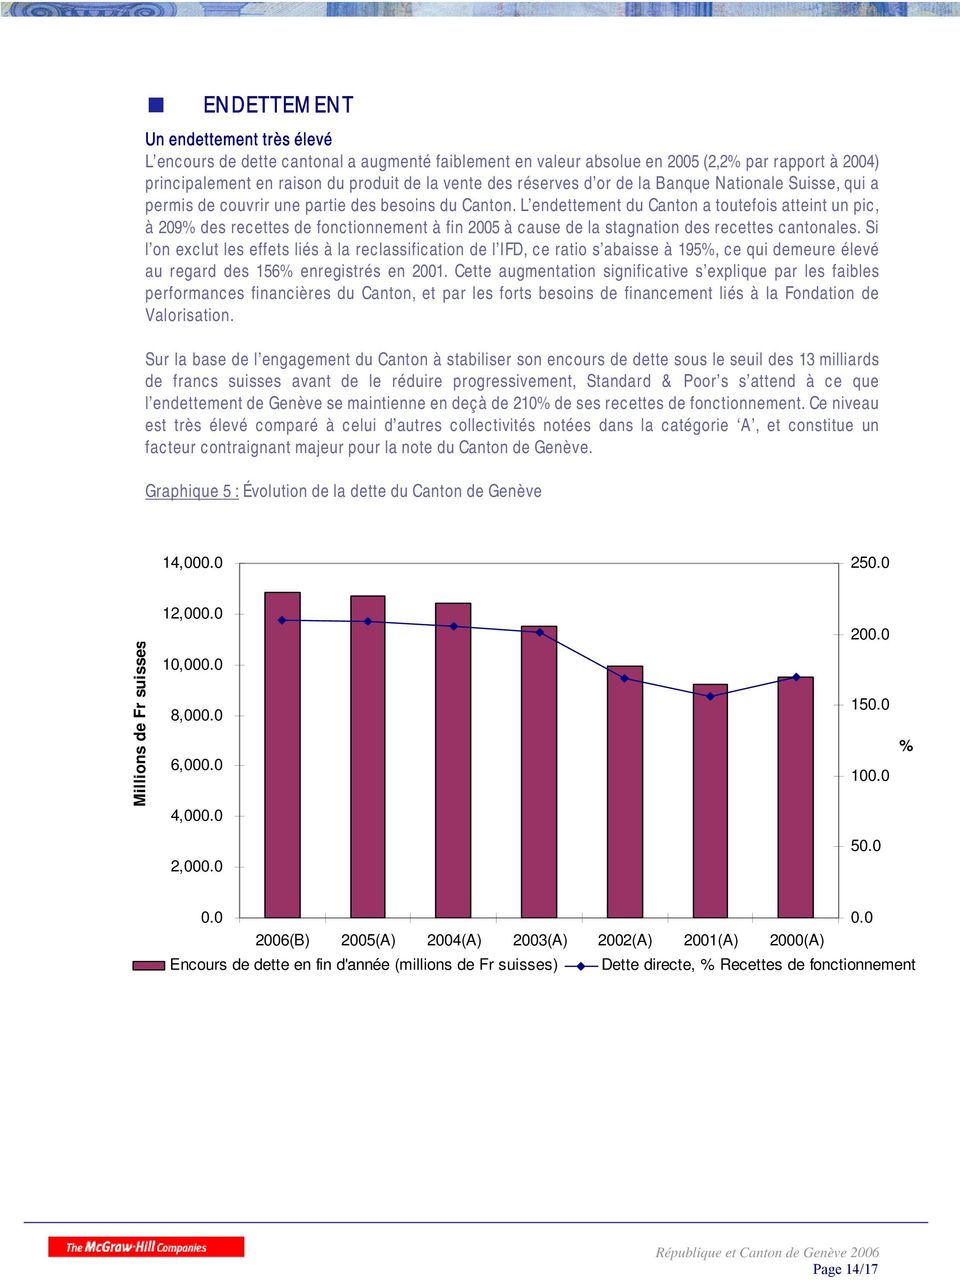 L endettement du Canton a toutefois atteint un pic, à 209% des recettes de fonctionnement à fin 2005 à cause de la stagnation des recettes cantonales.